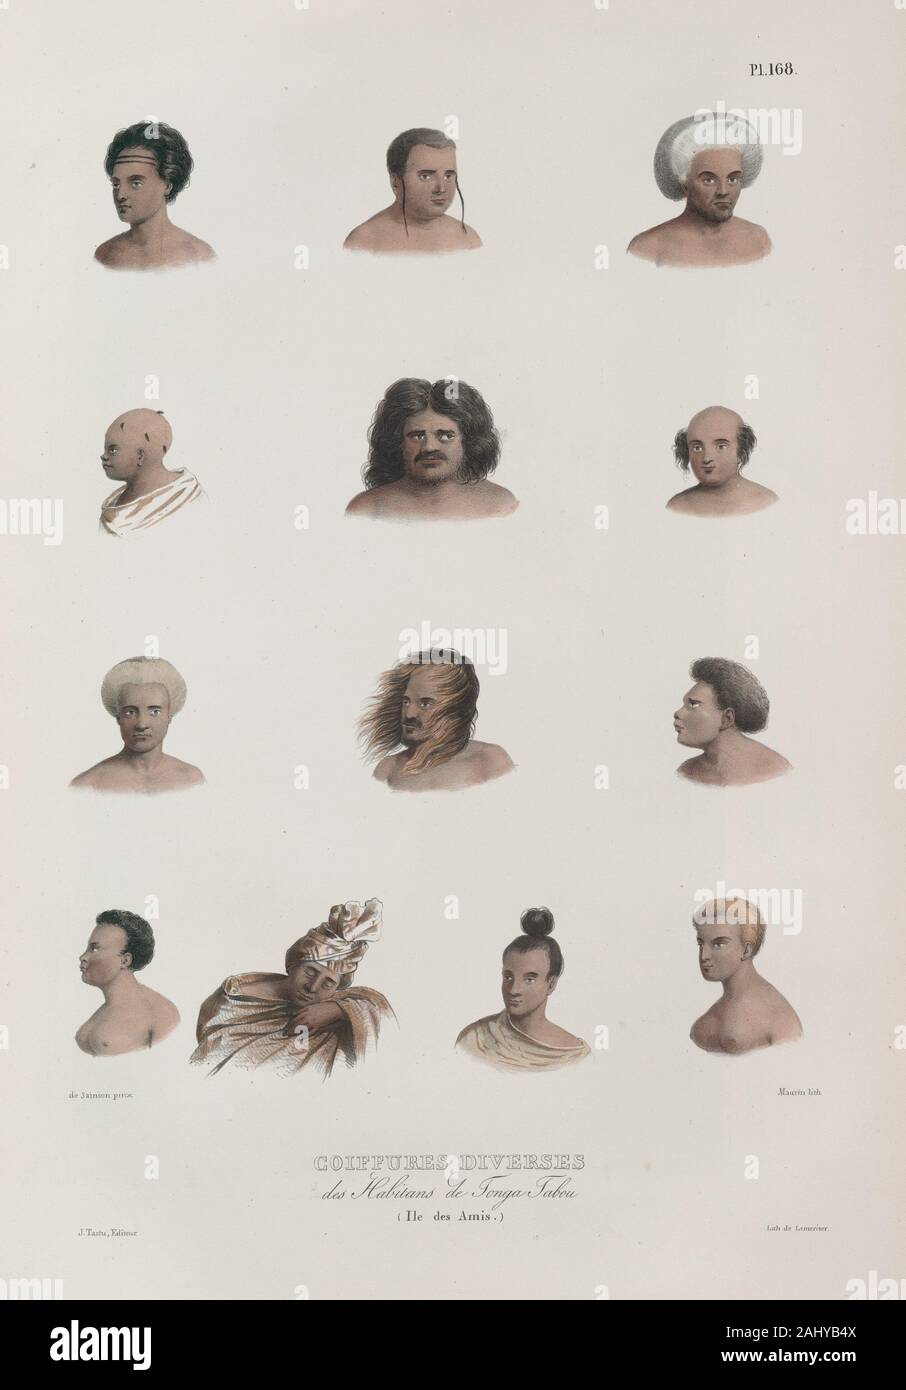 Various hairstyles: inhabitants Tonga Tabou. (Ile des Amis.) Dumont d'Urville, Jules-Sebastien-César (1790-1842) (Author). Voyage of the corvette Stock Photo